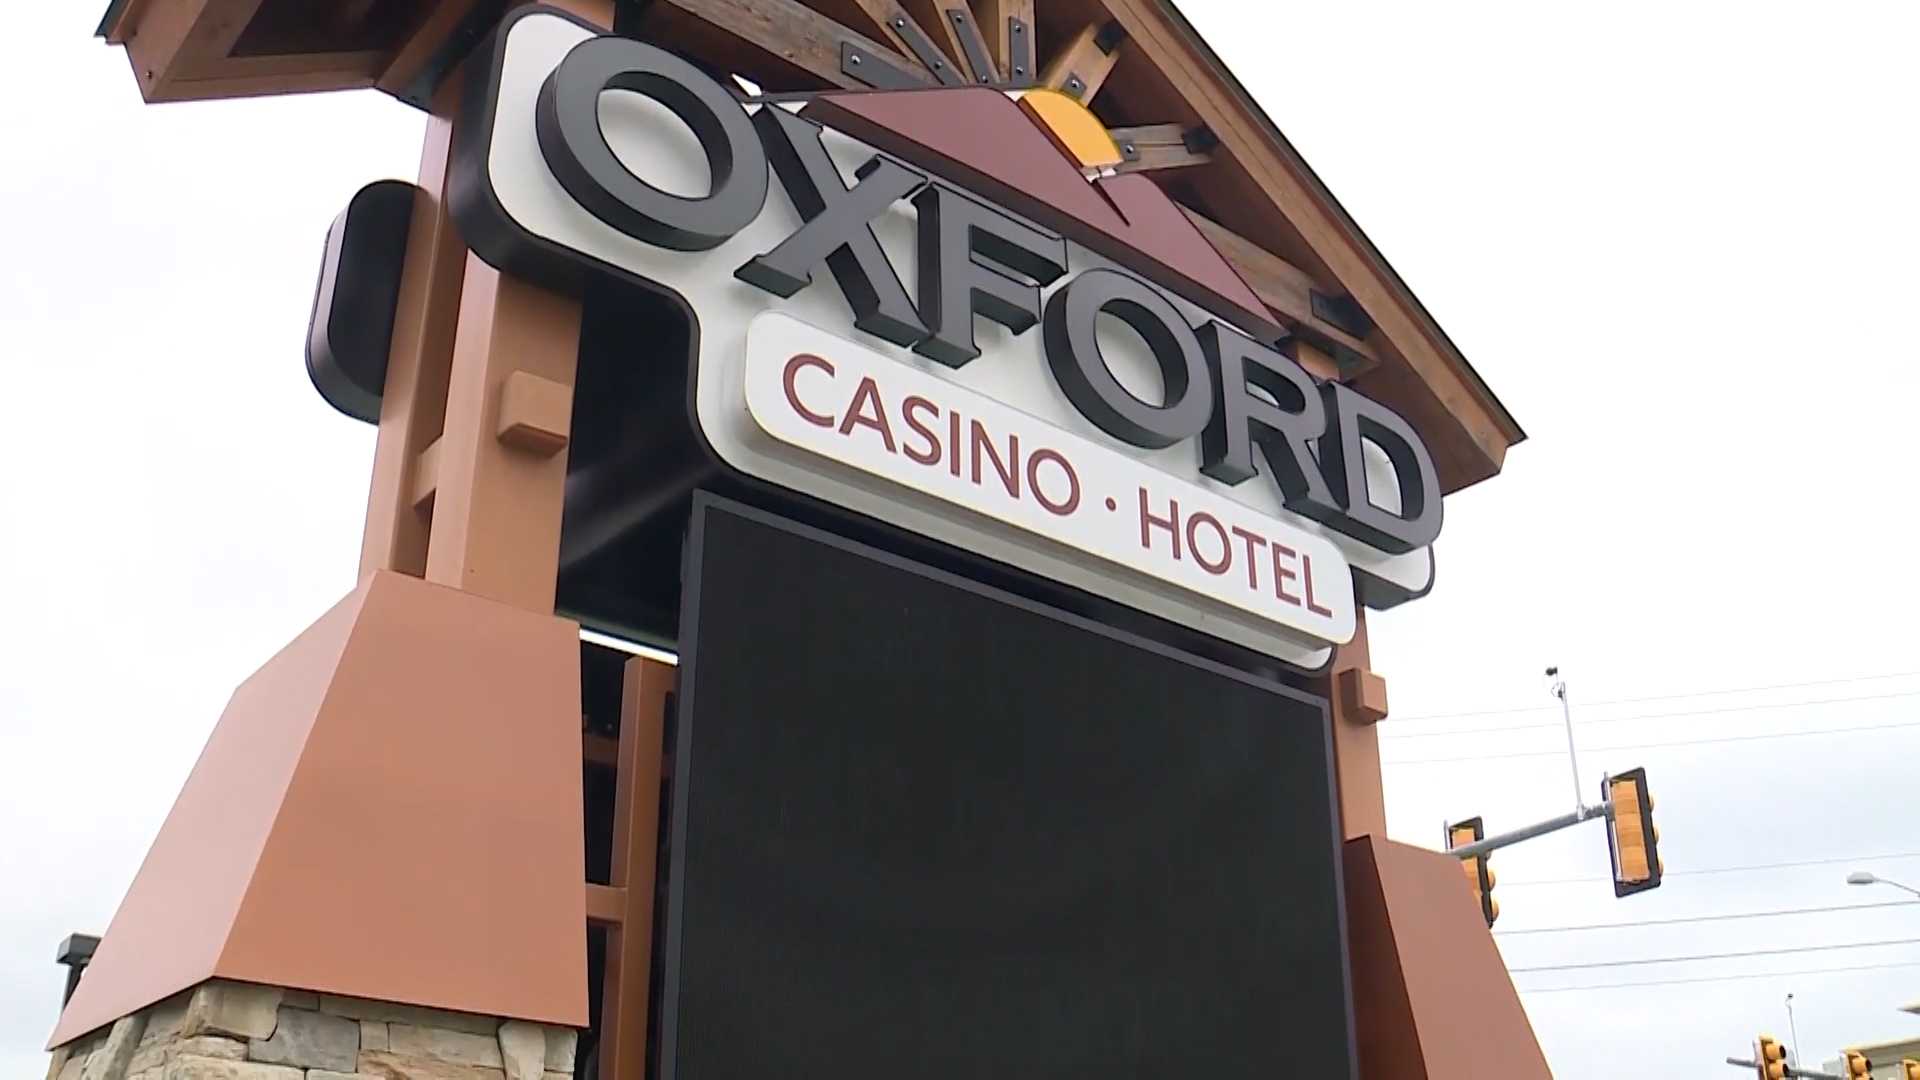 oxford casino oxford me